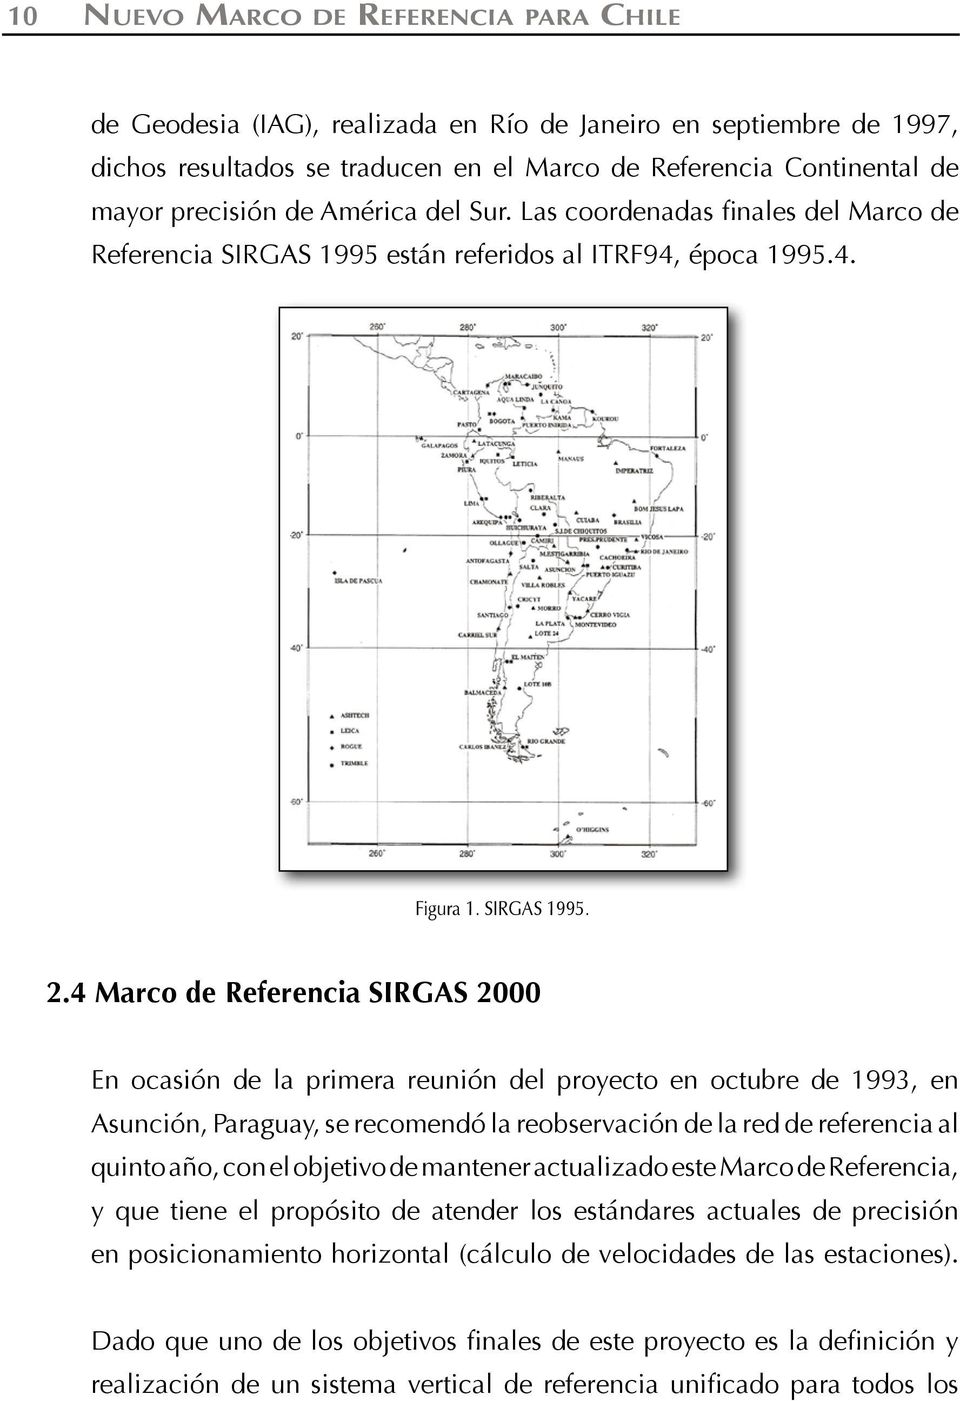 4 Marco de Referencia SIRGAS 2000 En ocasión de la primera reunión del proyecto en octubre de 1993, en Asunción, Paraguay, se recomendó la reobservación de la red de referencia al quinto año, con el